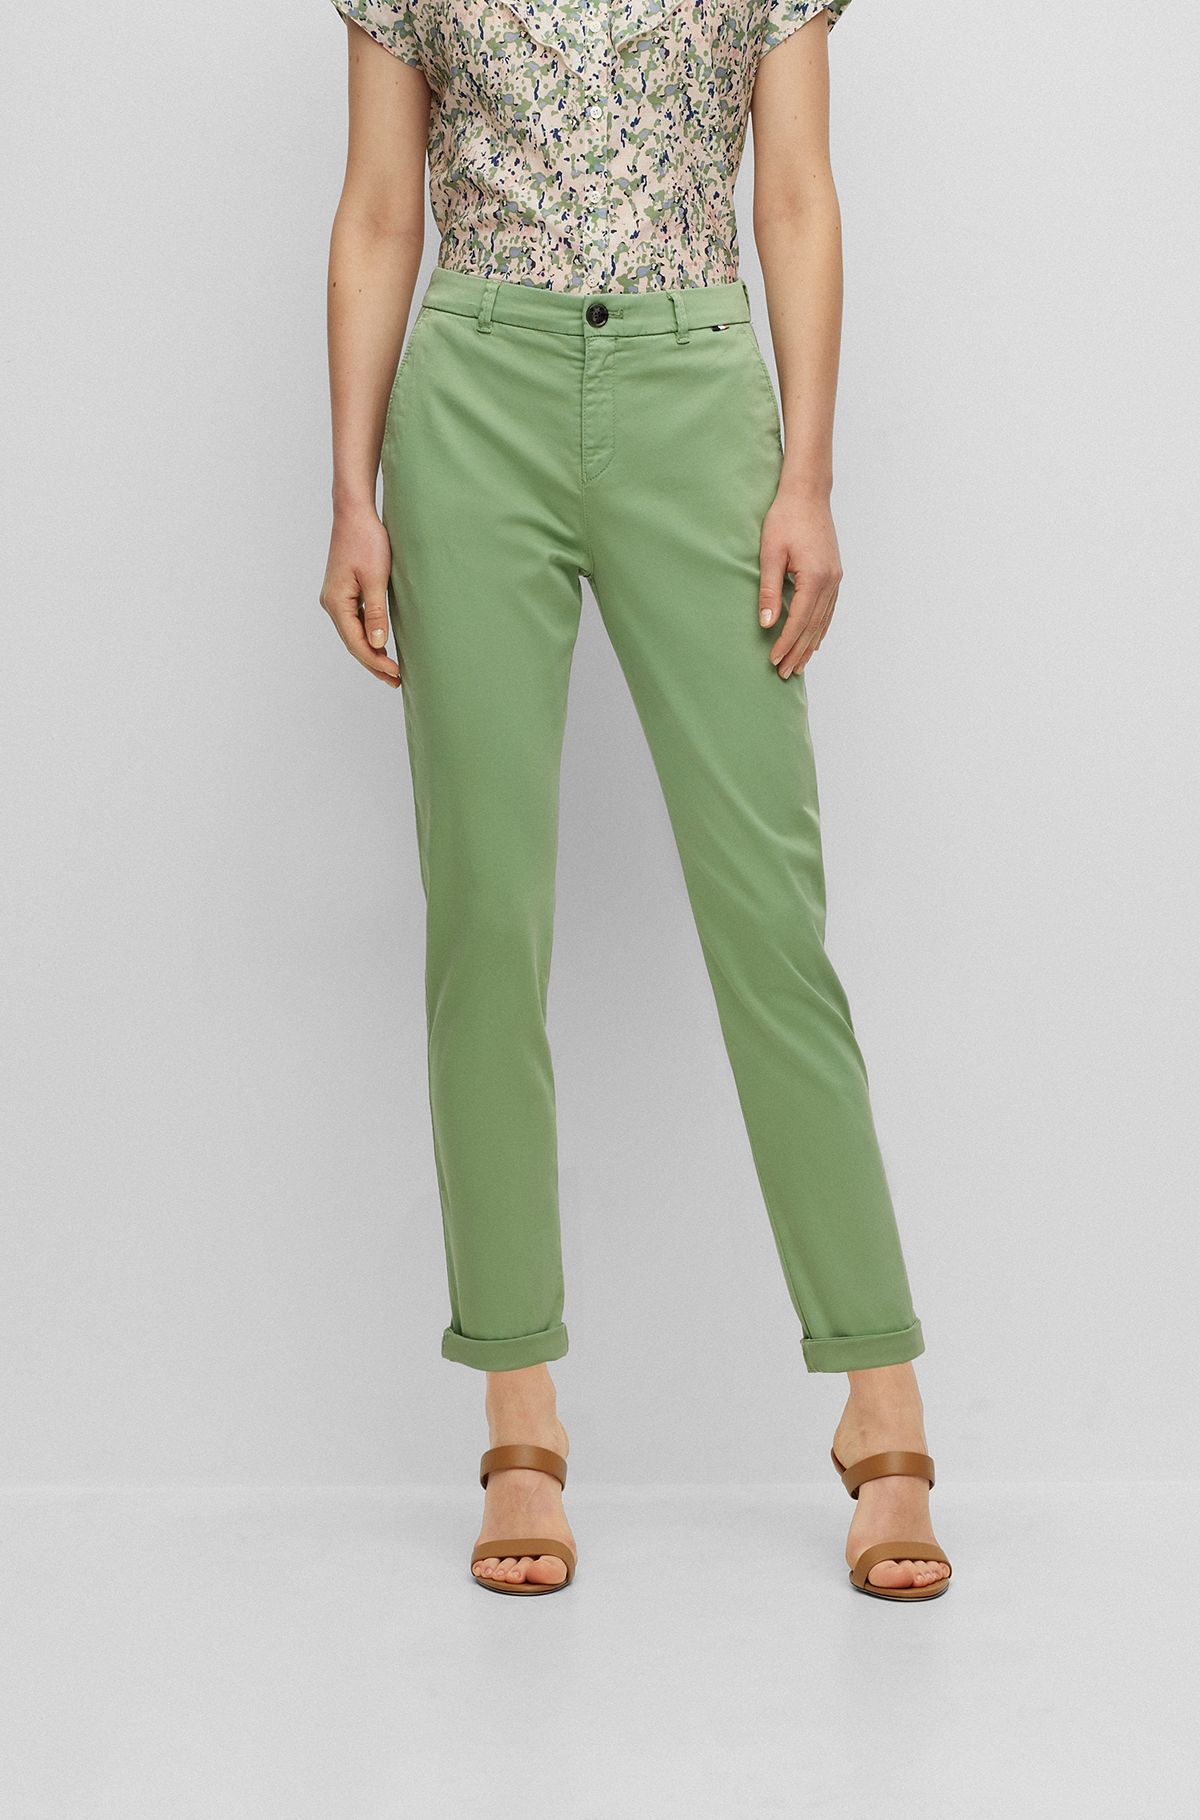 Women's Trousers & Shorts, Green